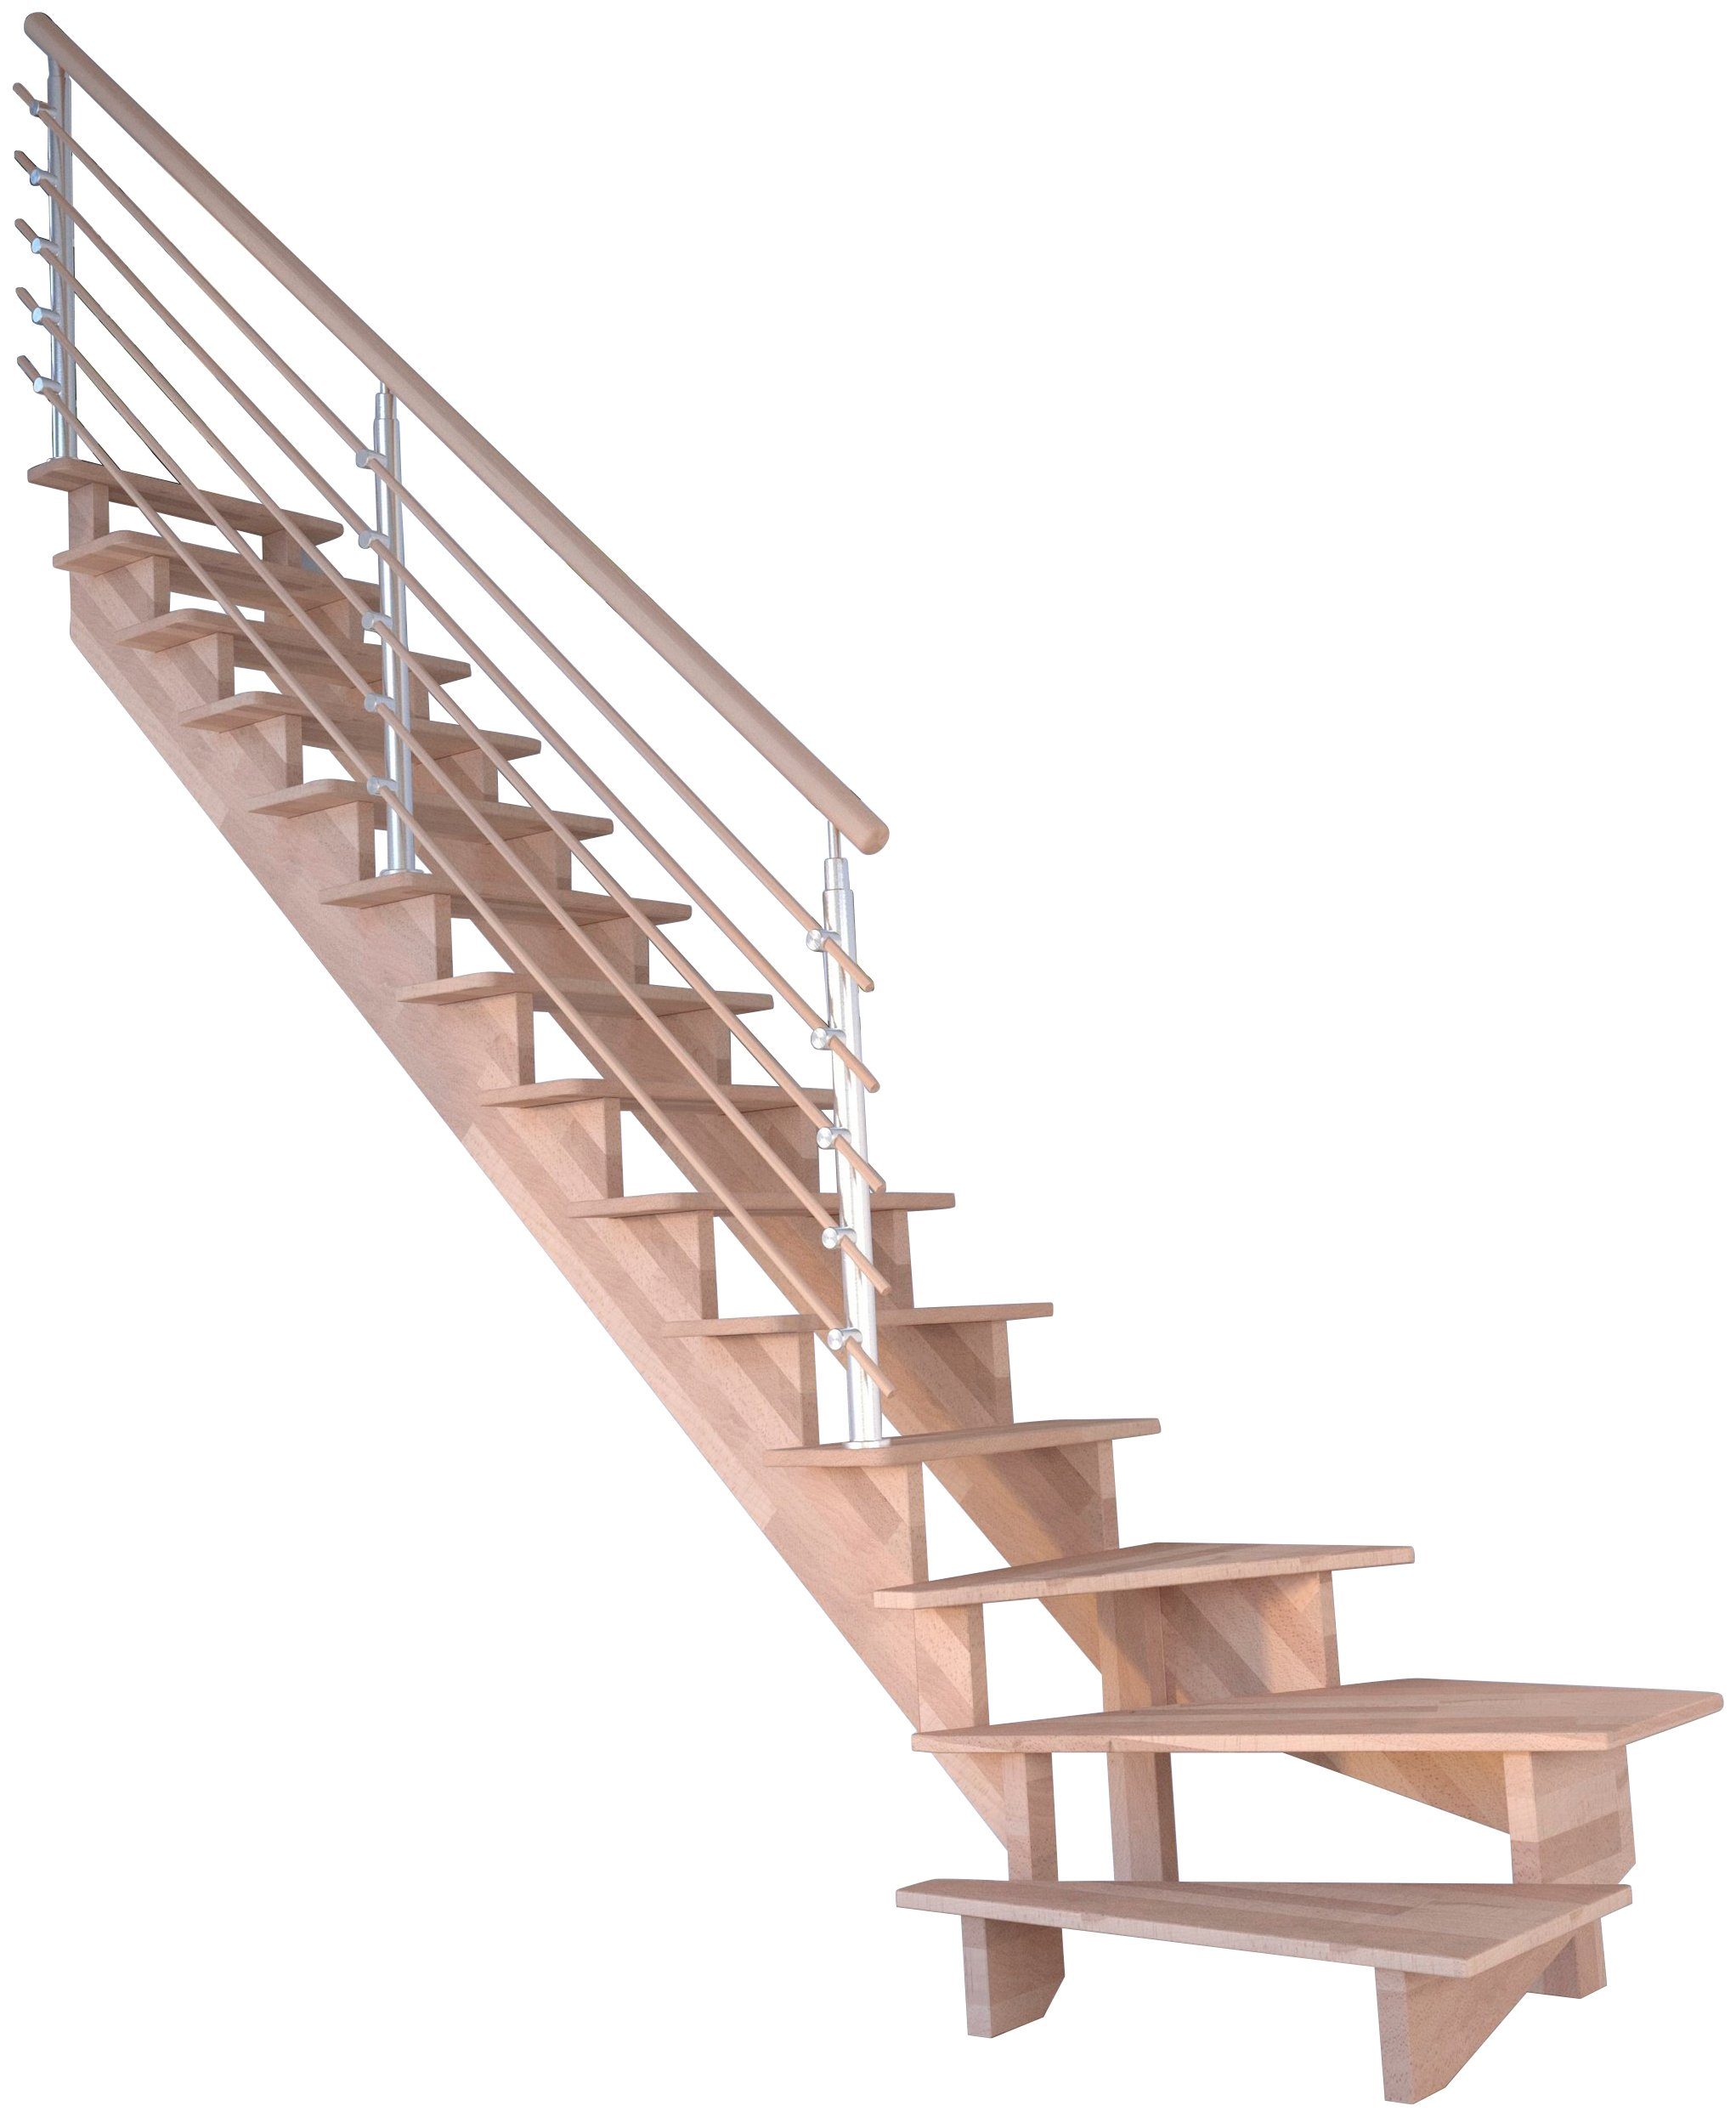 Starwood Systemtreppe Massivholz Lindos, Design-Geländer Holzrundstäbe, für Geschosshöhen bis 300 cm, Stufen offen, gewendelt Links, Durchgehende Wangenteile